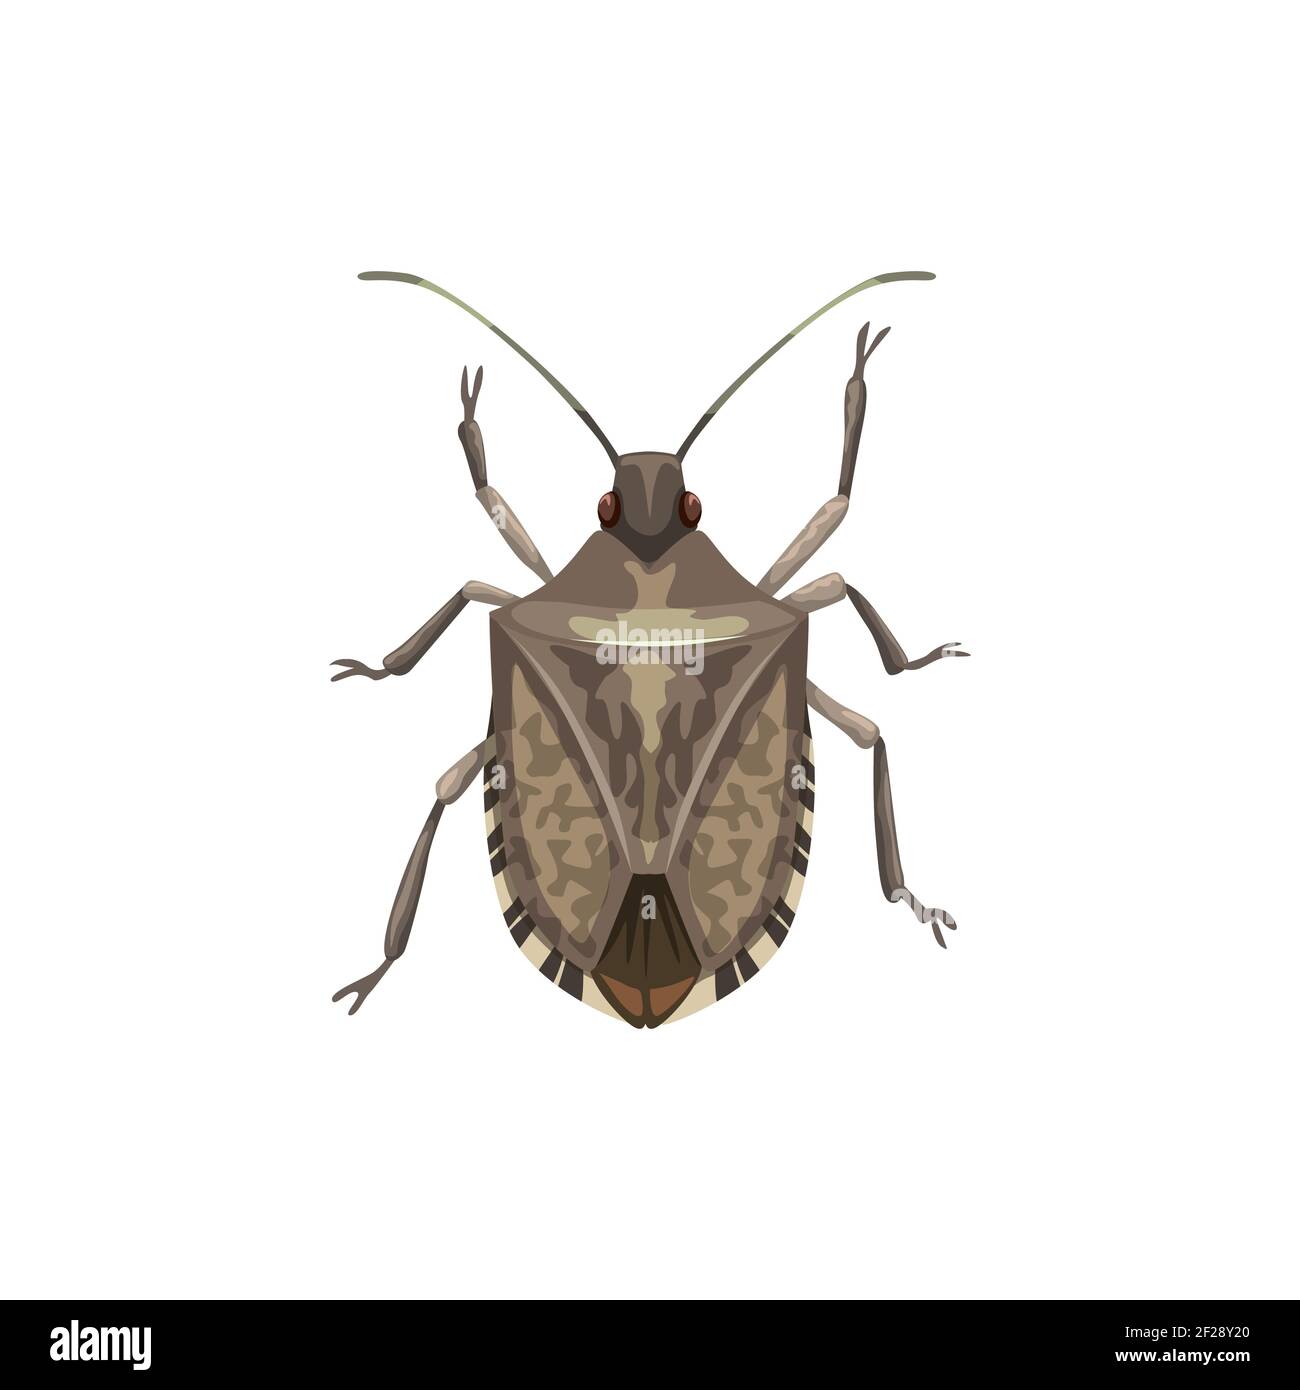 Schild Bug Symbol, Schädlingsbekämpfung Insekten Ausrottung und Dissektion Service, Vektor. Landwirtschaft und Garten Insektendesinfektion, Schild Bug Pestizid Stock Vektor